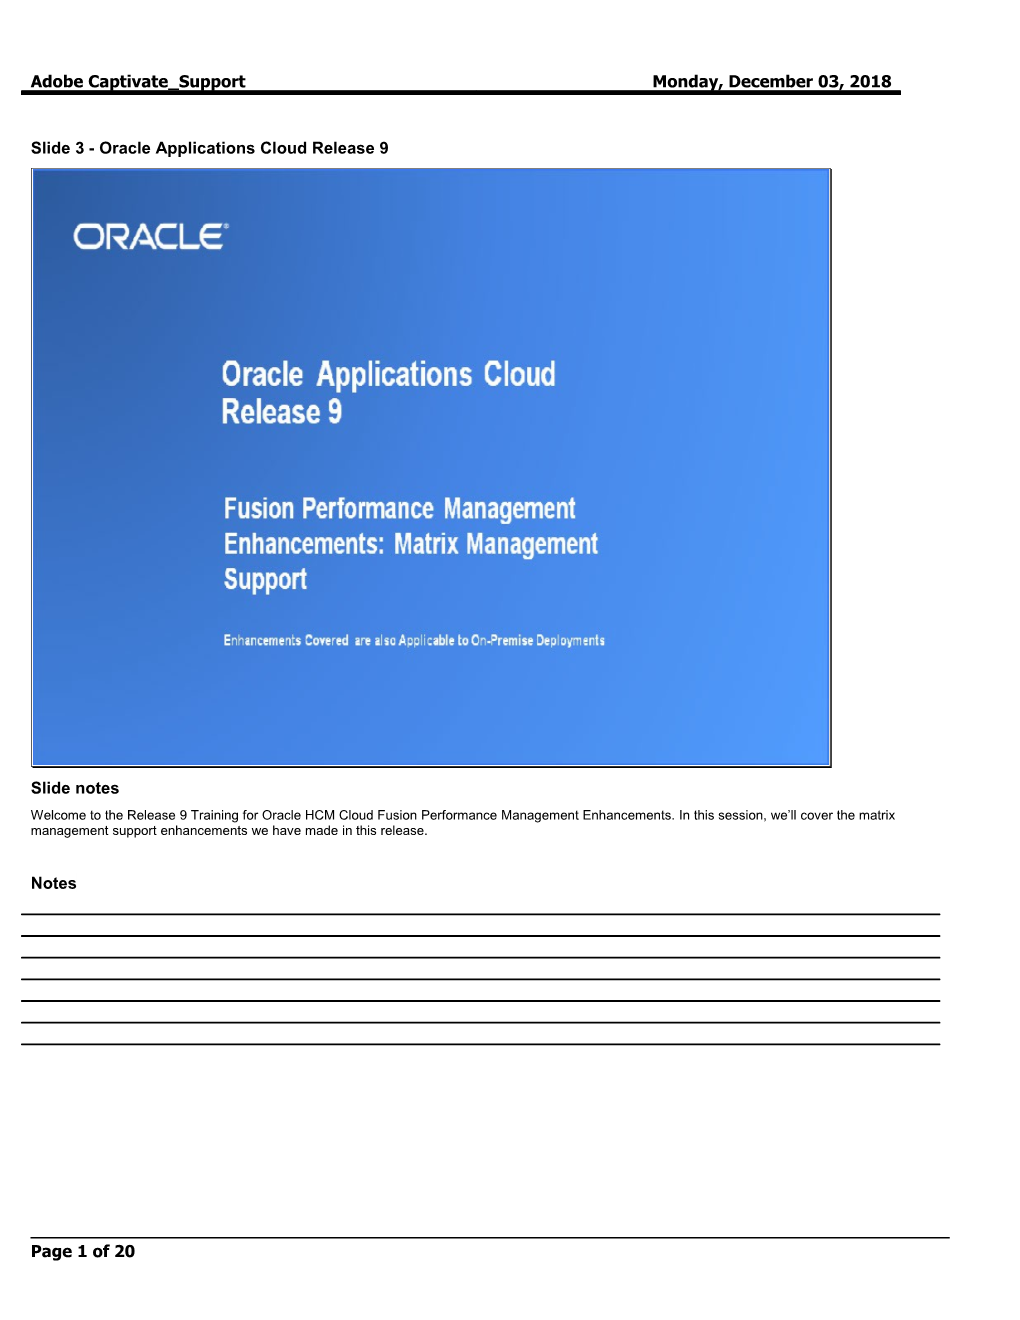 Slide 3 - Oracle Applications Cloud Release 9